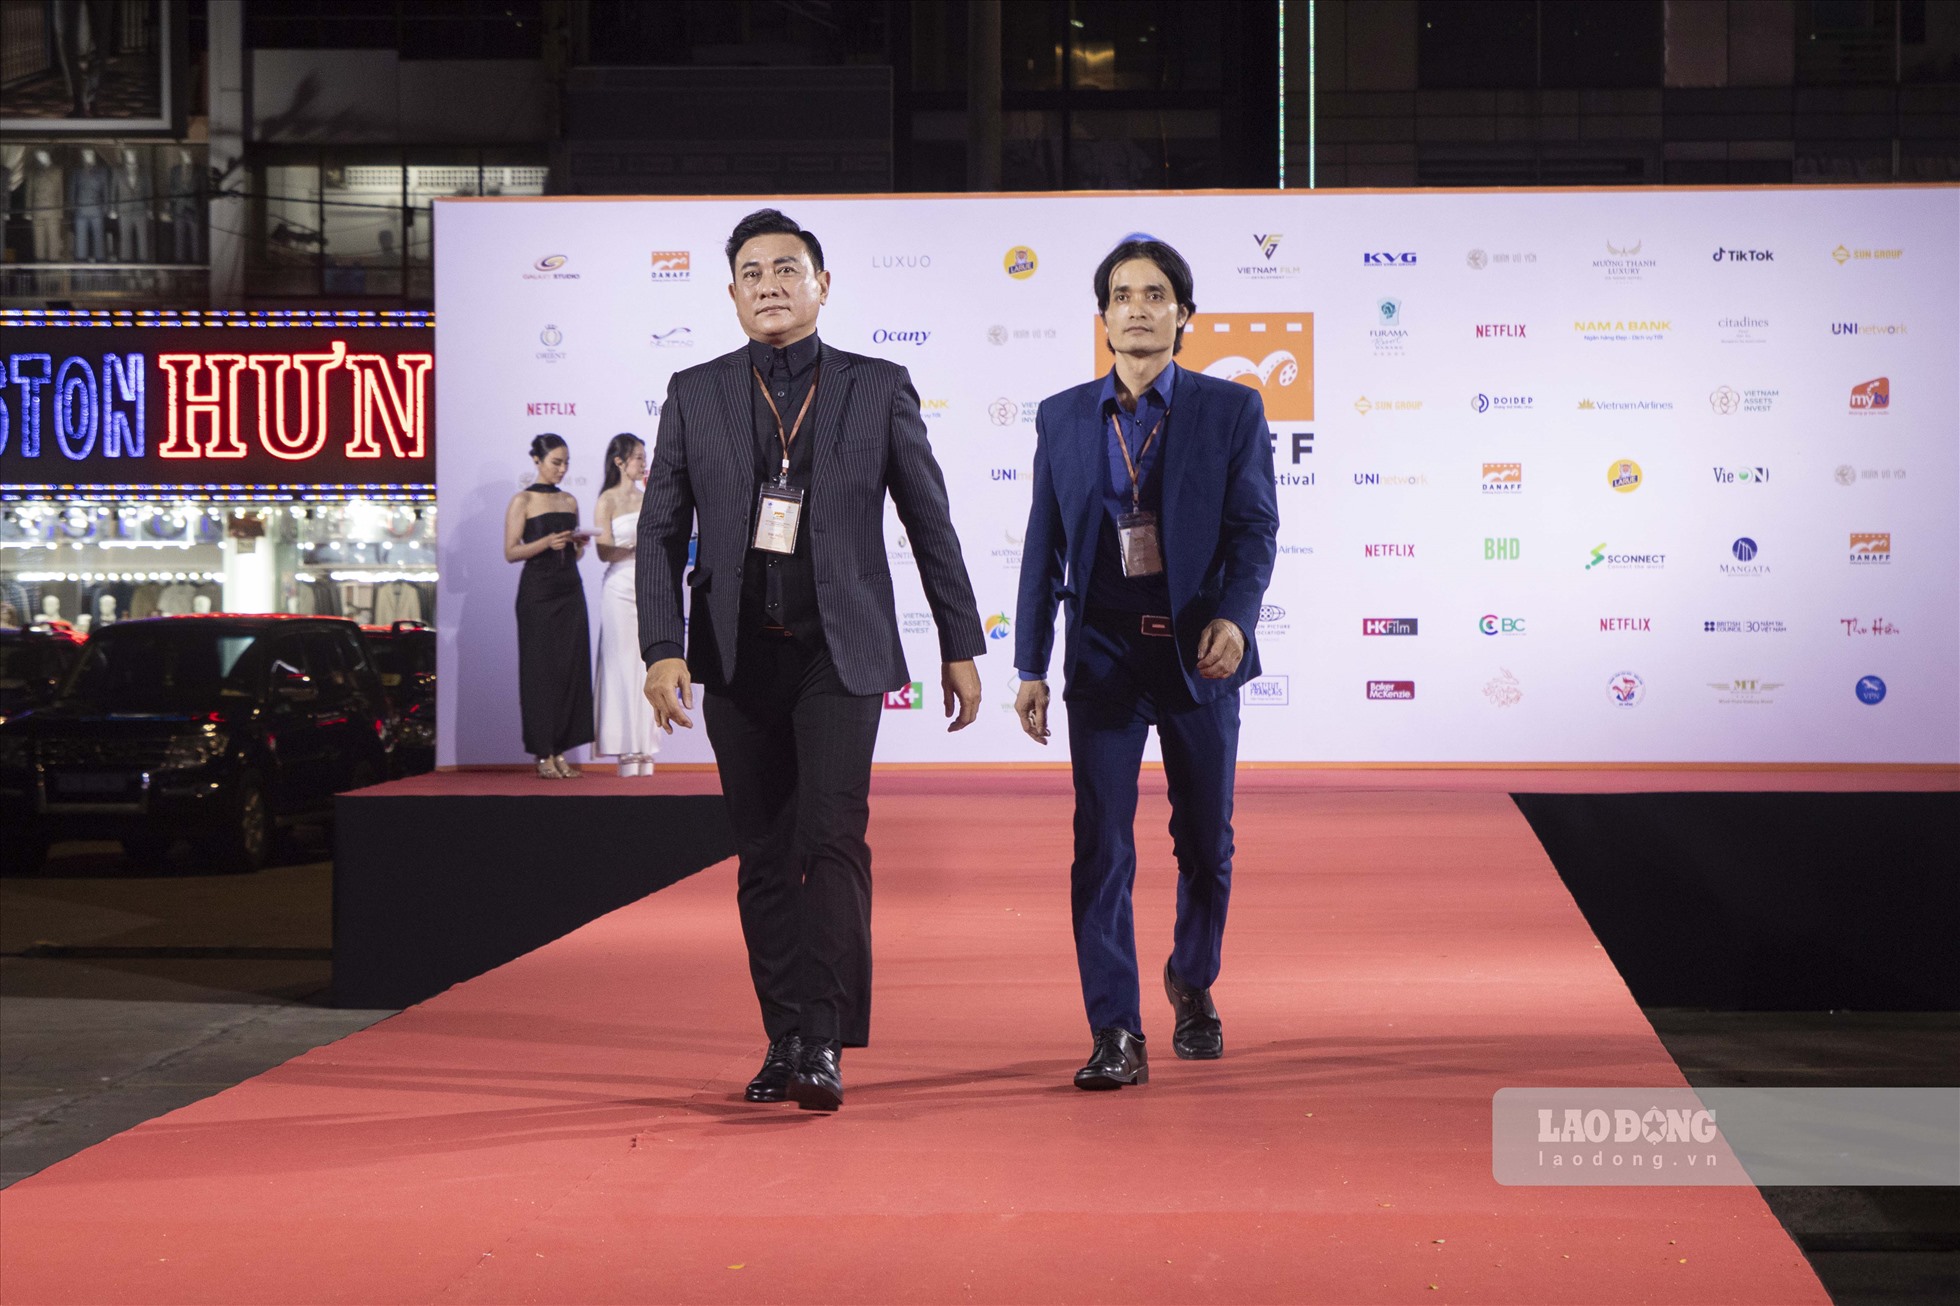 Tại thảm đỏ khai mạc Liên hoan phim Châu Á Đà Nẵng, nhiều diễn viên và đạo diễn đã đến tham dự khai mạc sự kiện này.